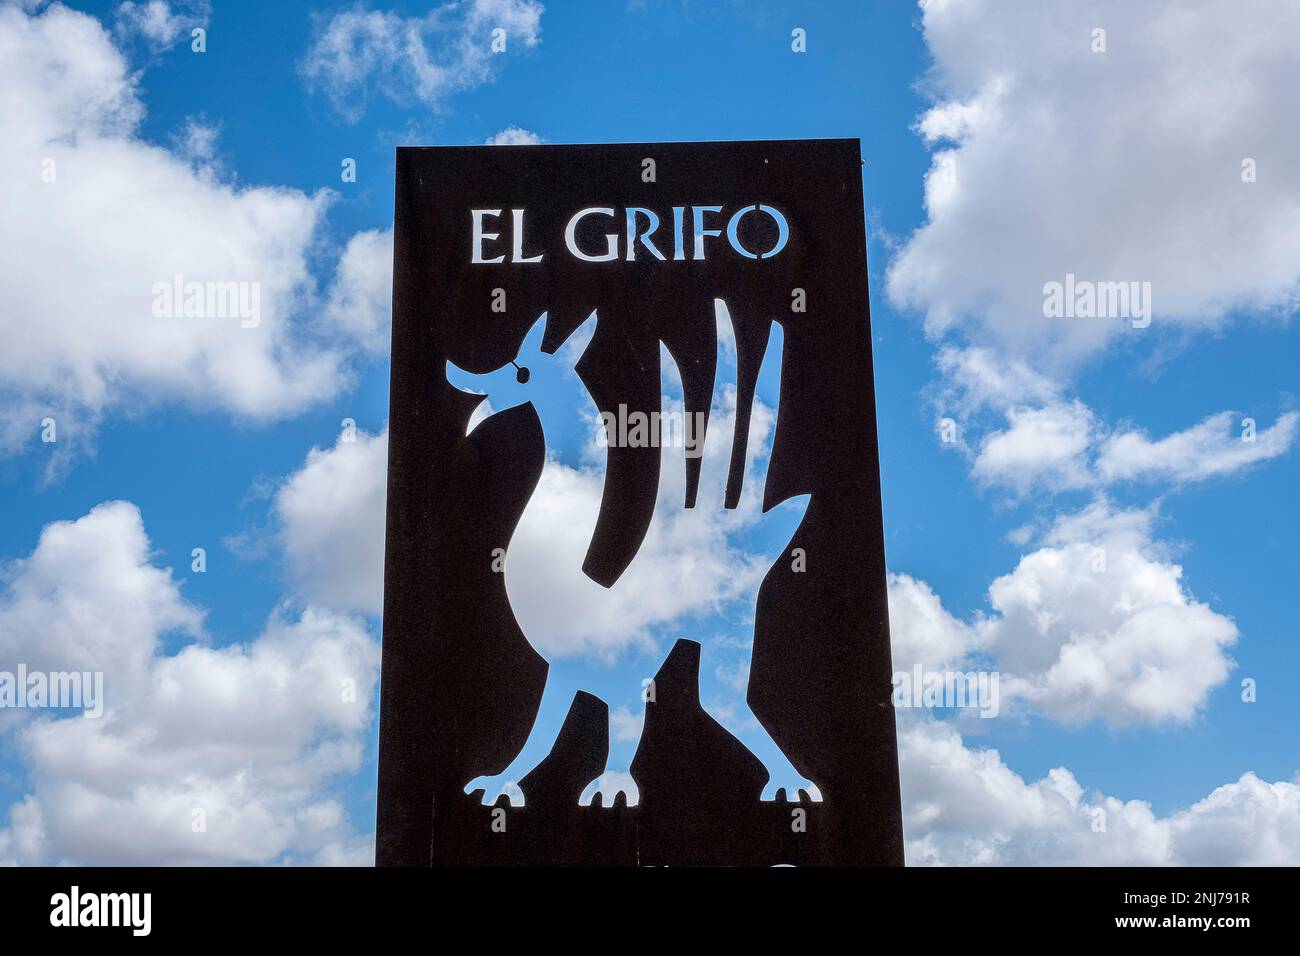 El Grifo wine cellar, Lanzarote, Canary Islands, Spain, Europe Stock Photo  - Alamy